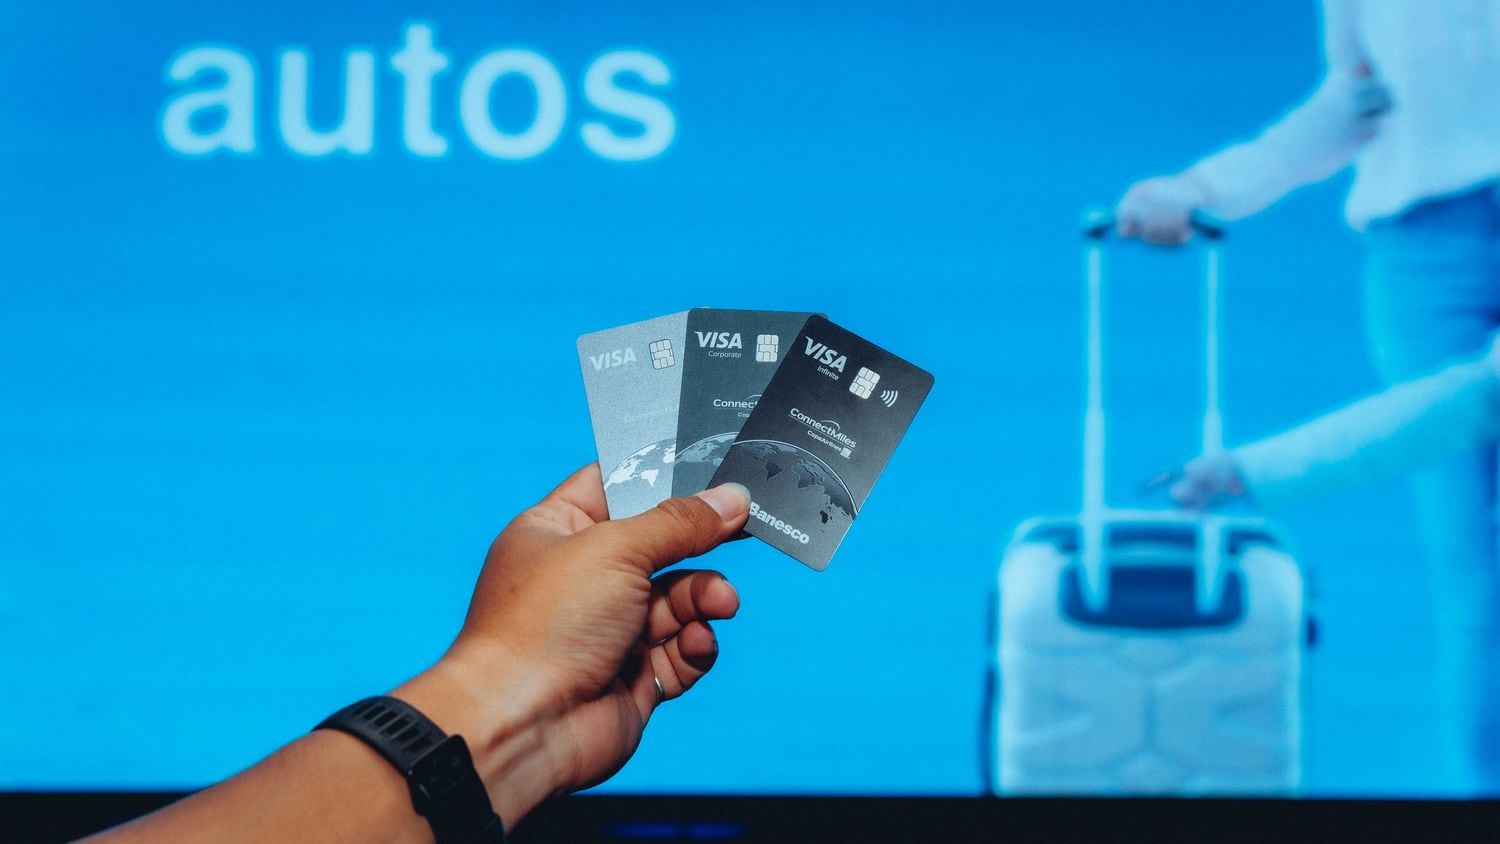 Tus compras te llevan más alto con las nuevas Tarjetas Visa ConnectMiles de Banesco